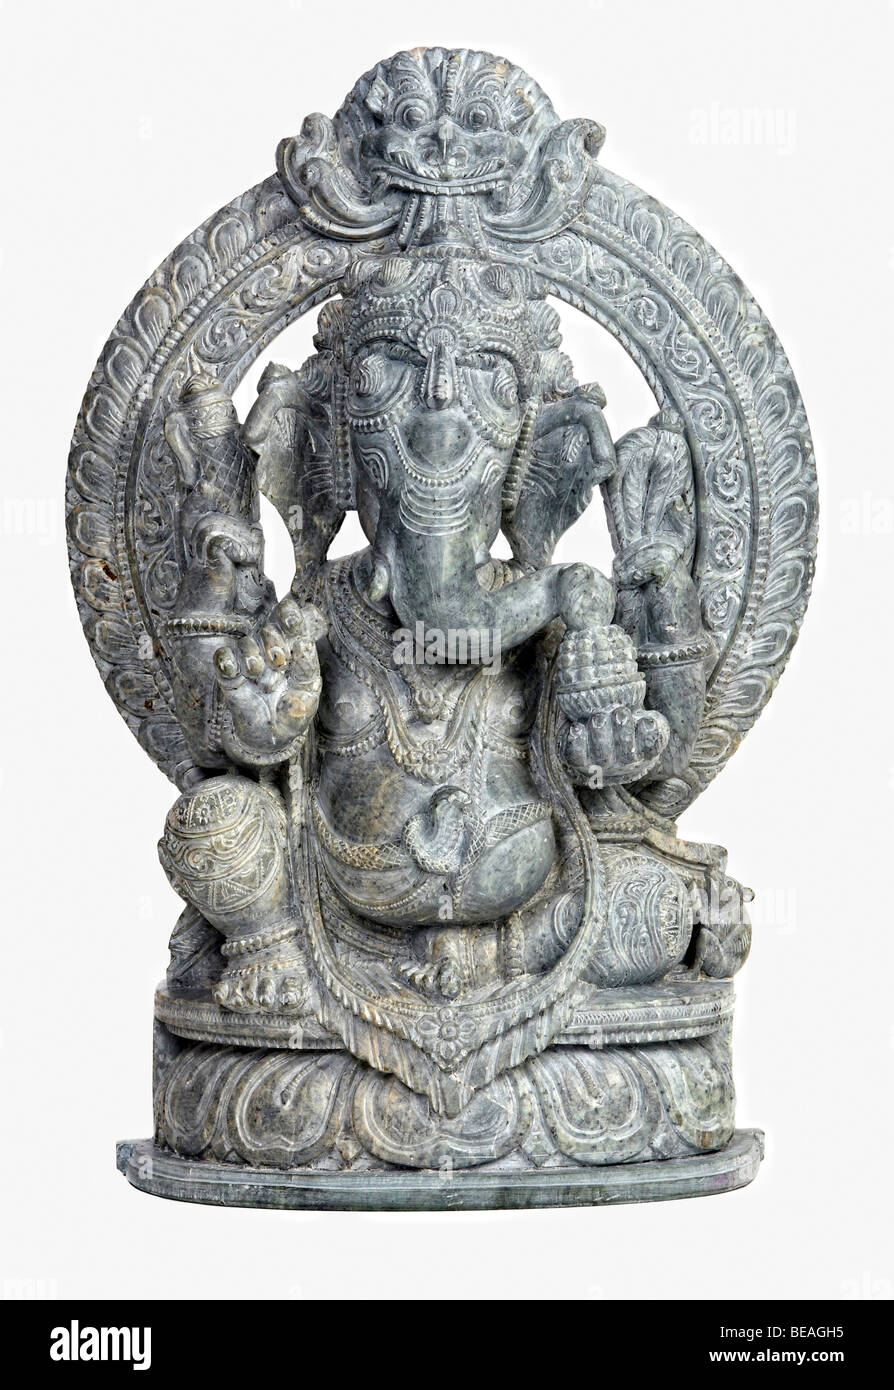 Classi sculpture de pierre dieu indien ganesh on white Banque D'Images